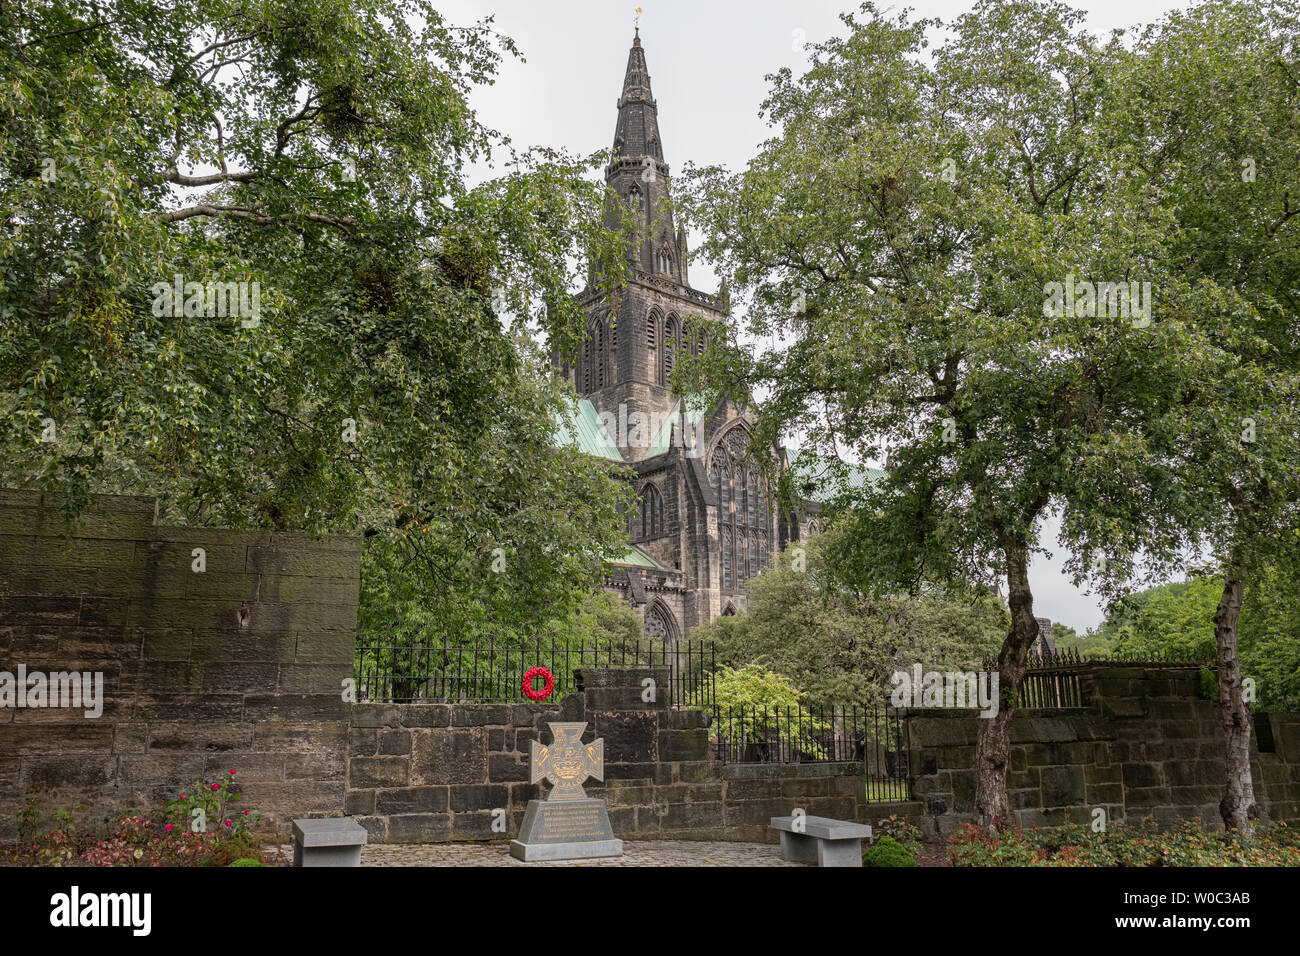 Ancienne architecture impressionnante de Glasgow à la recherche sur la magnifique cathédrale de Glasgow caché derrière les arbres. Banque D'Images